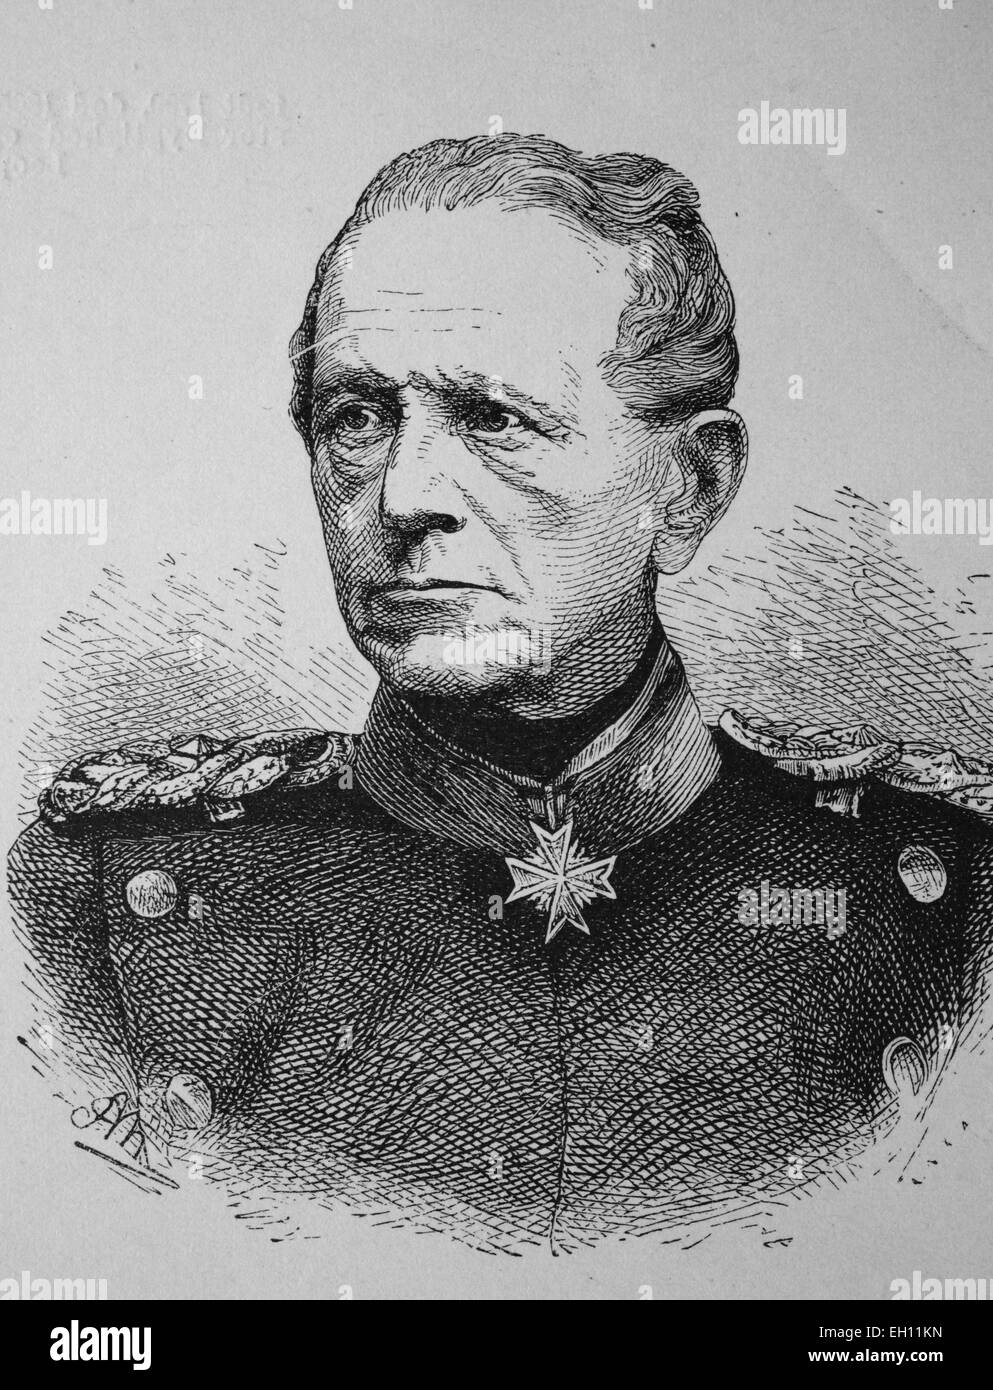 Helmut Graf von Moltke, 1800 - 1891, le feld-maréchal prussien, historique gravure sur bois, vers 1880 Banque D'Images